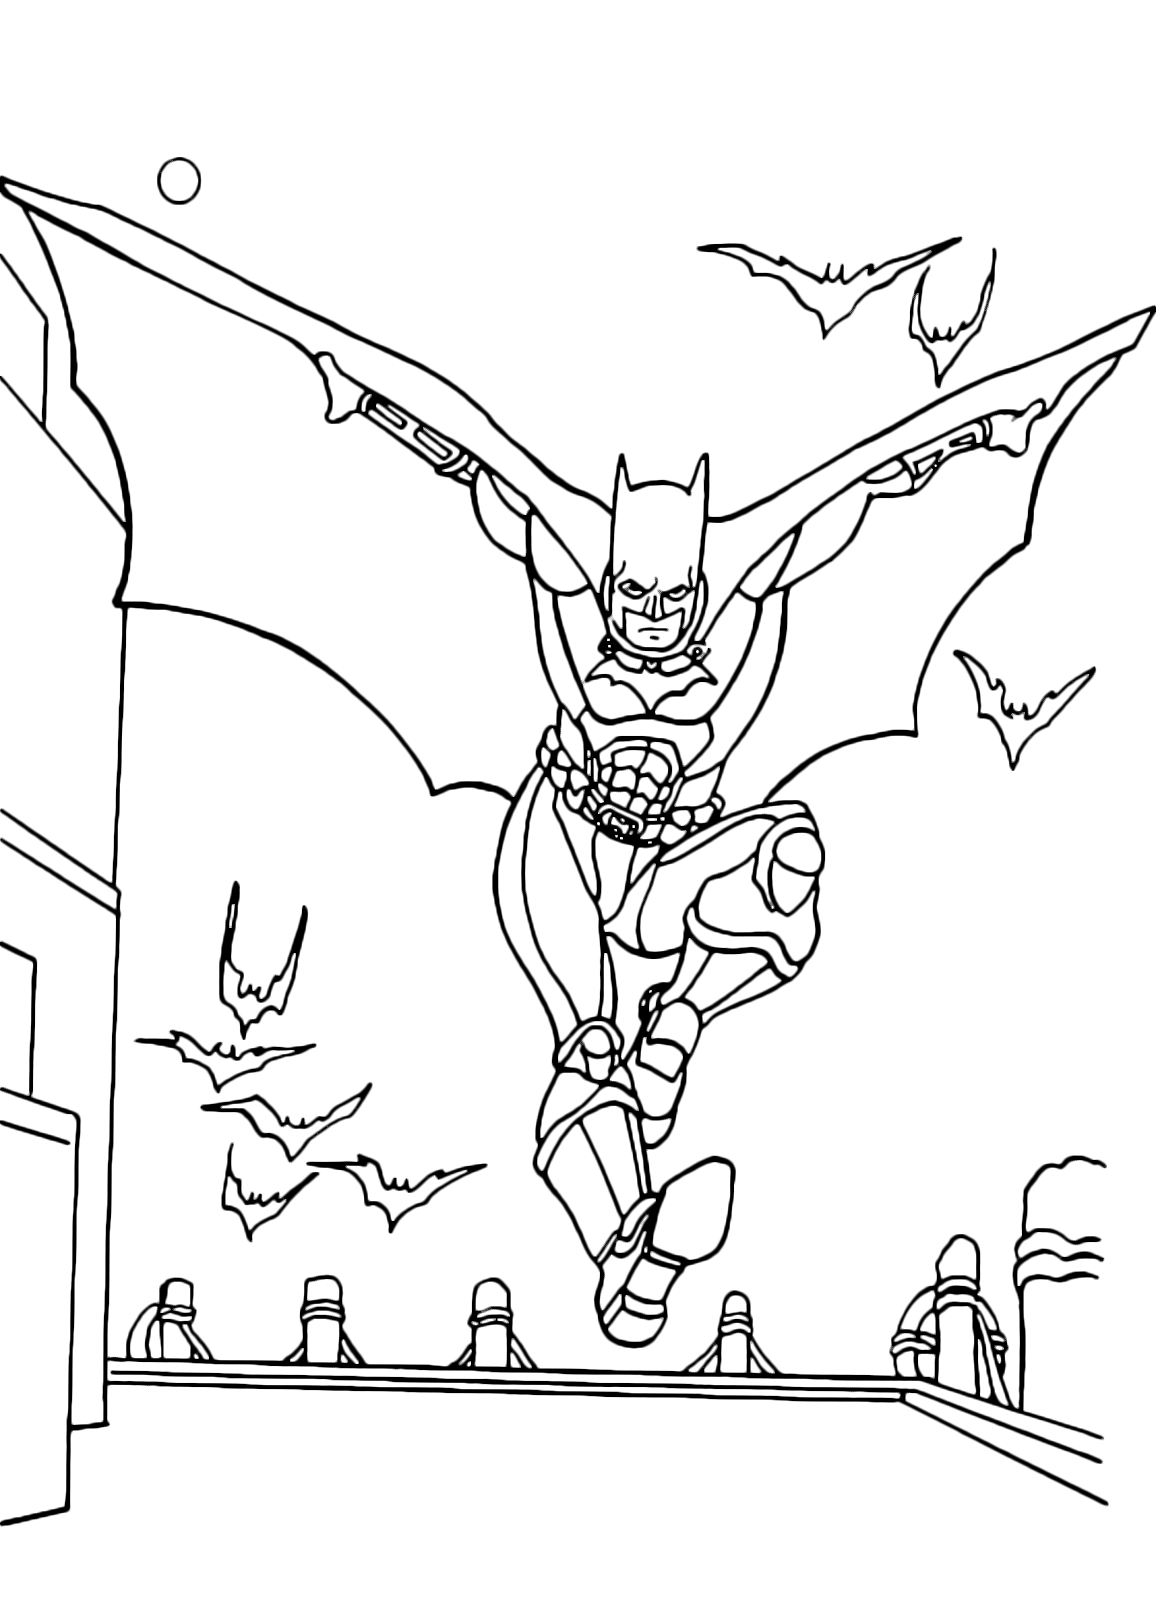 Batman vola tra i pipistrelli da colorare